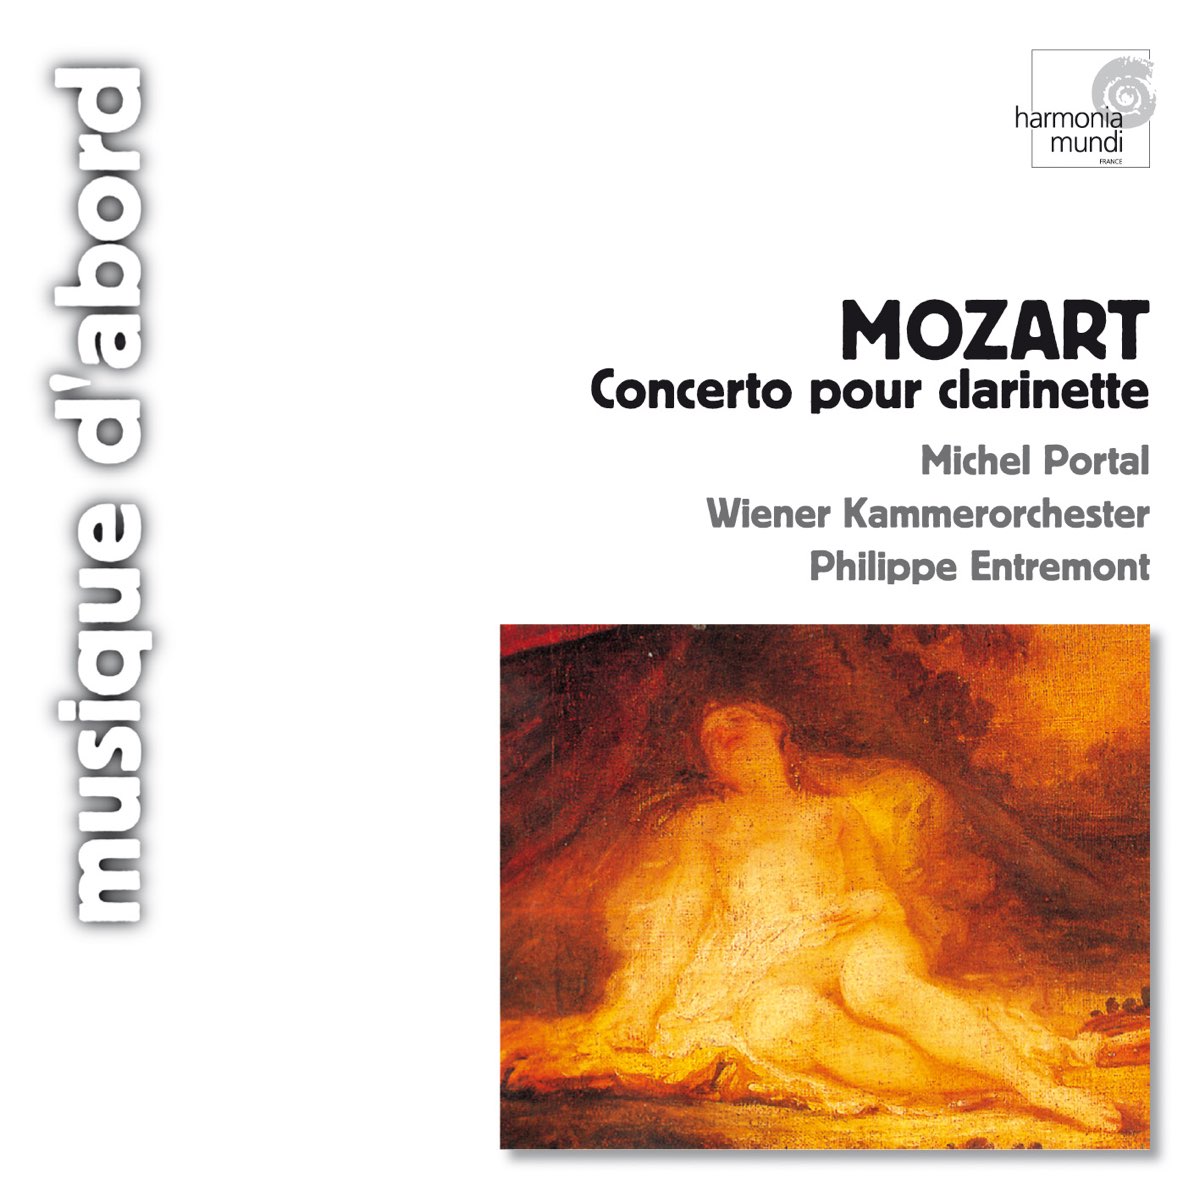 Mozart: Concerto pour clarinette K.622 – Album par Philippe Entremont,  Wiener Kammerorchester & Michel Portal – Apple Music